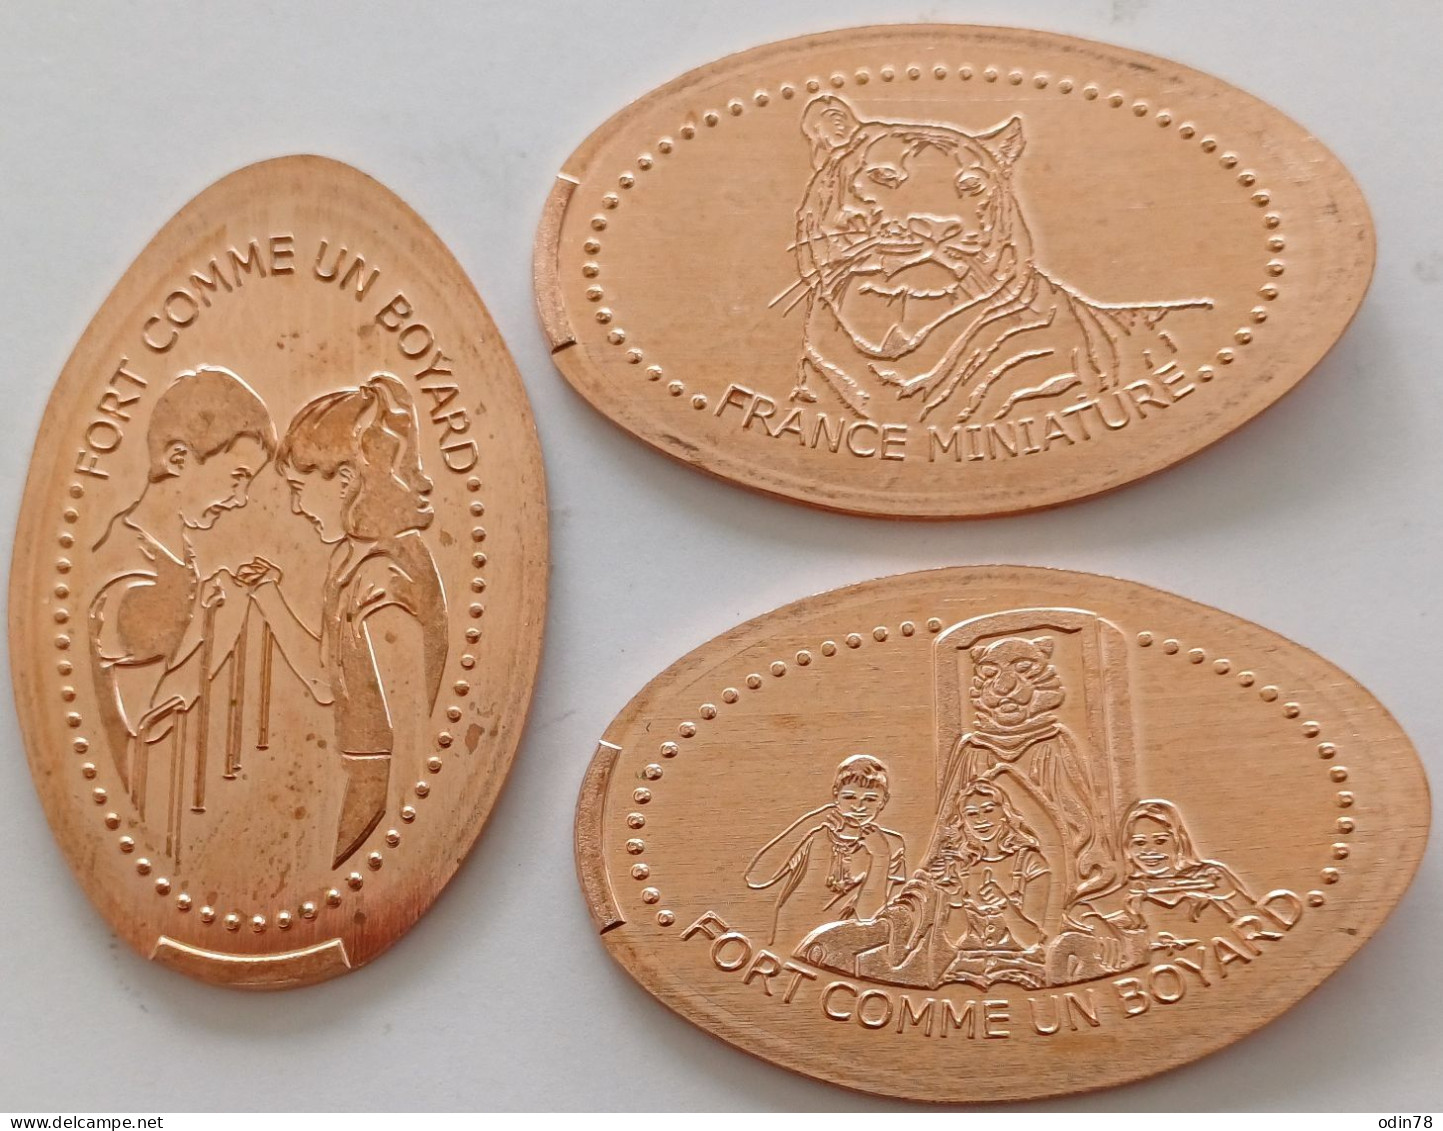 3 Pièces écrasées -   FRANCE MINIATURE  (78) - Souvenirmunten (elongated Coins)